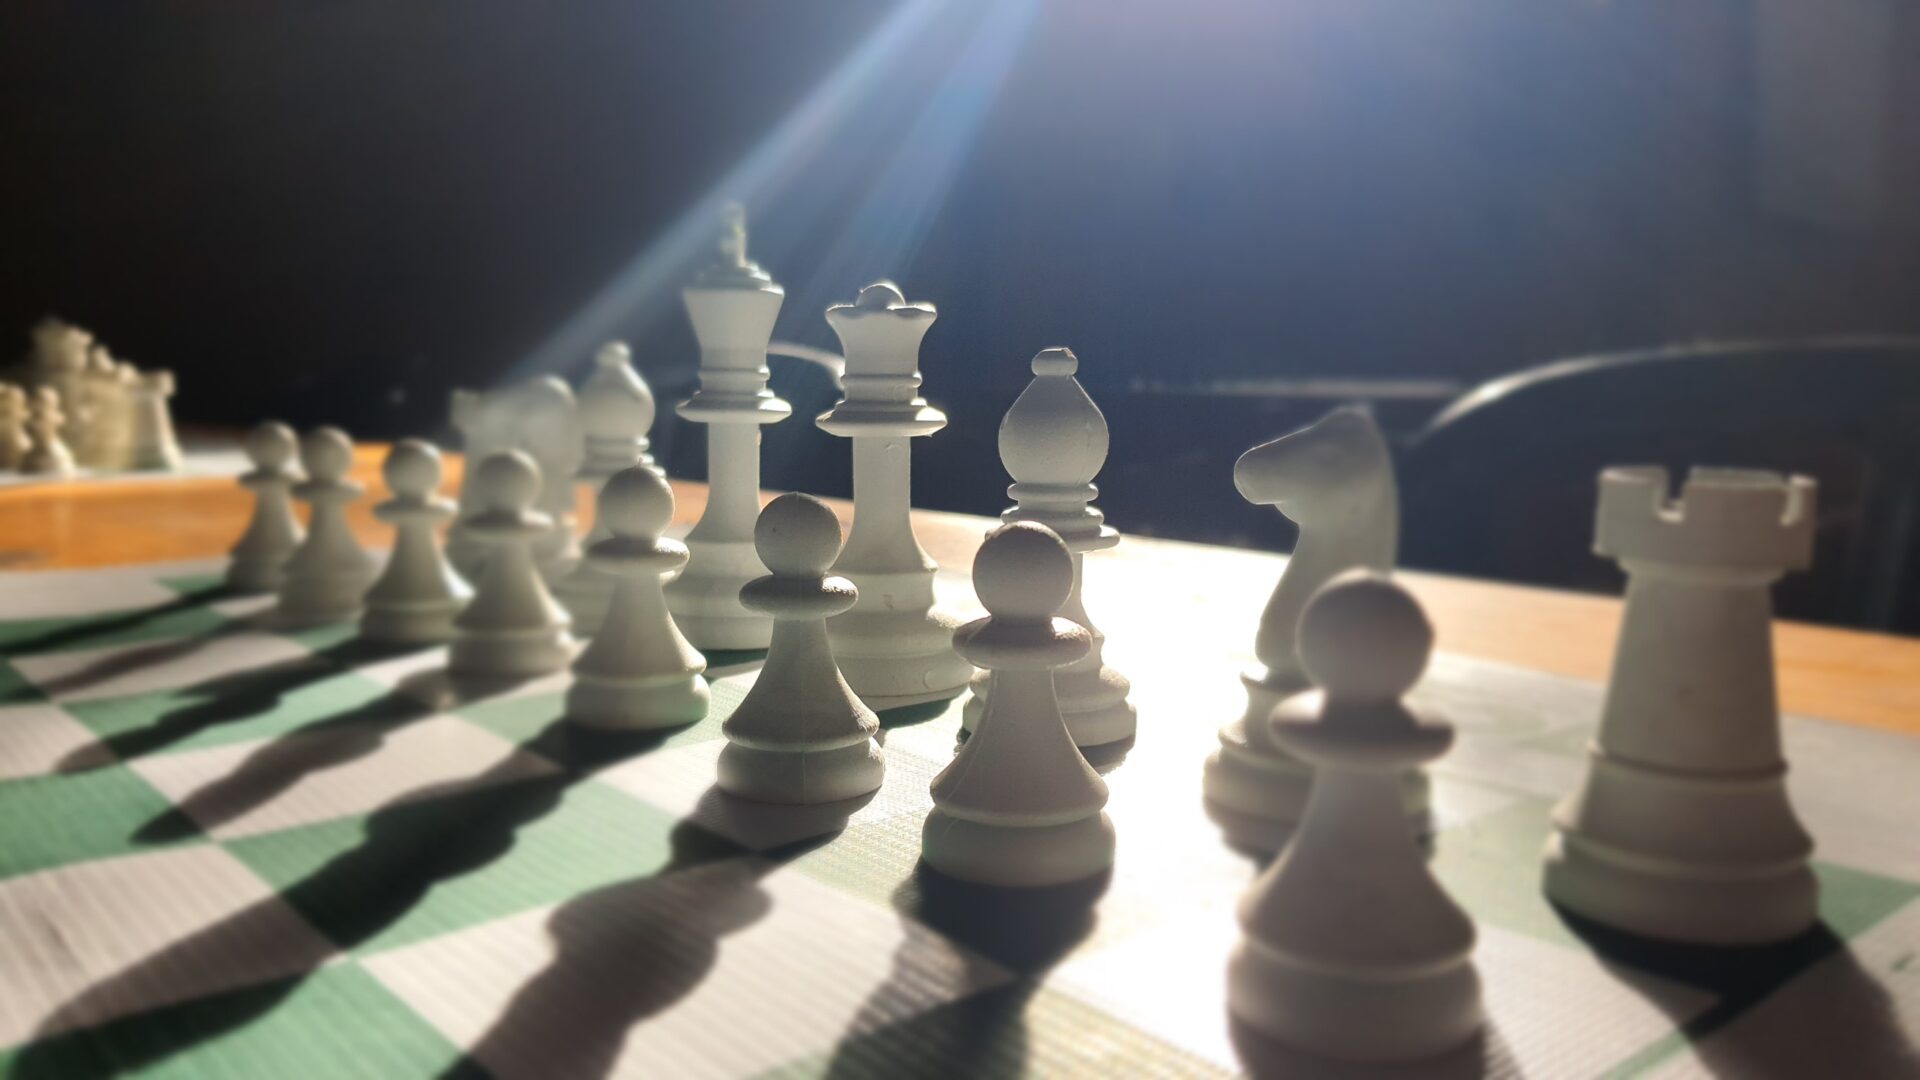 Campeonato de xadrez recebe competidores estudantes da rede